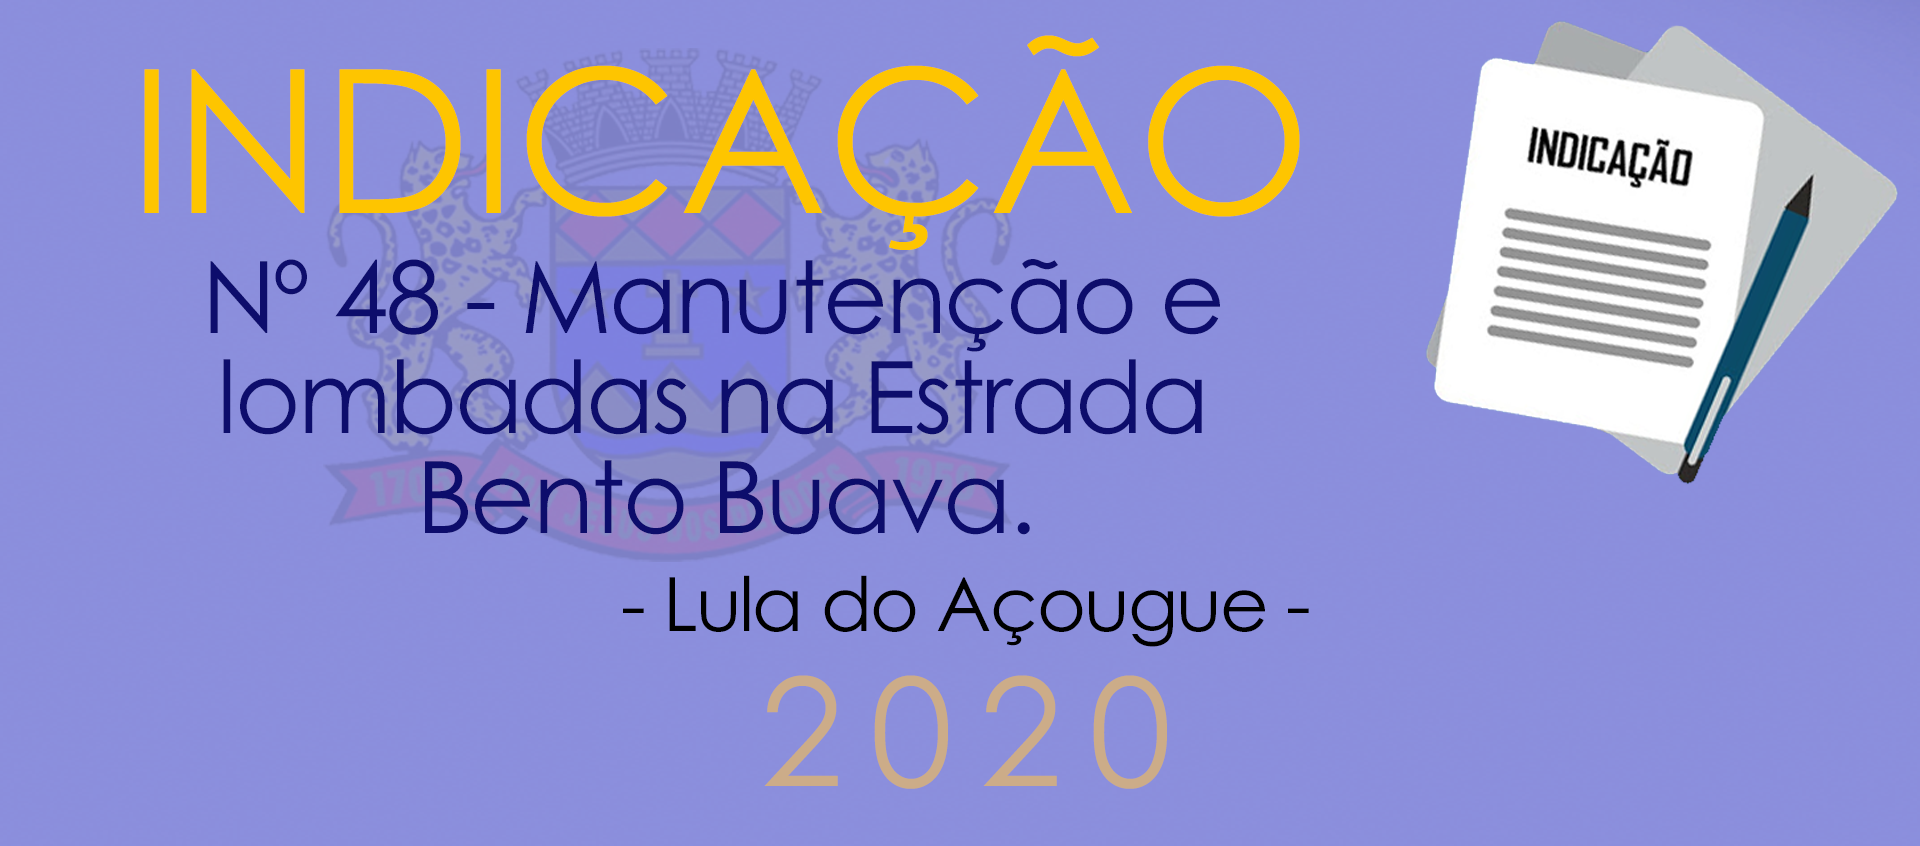 Indicação nº 48 - Manutenção e lombadas na Estrada Bento Buava dos Santos - Lula